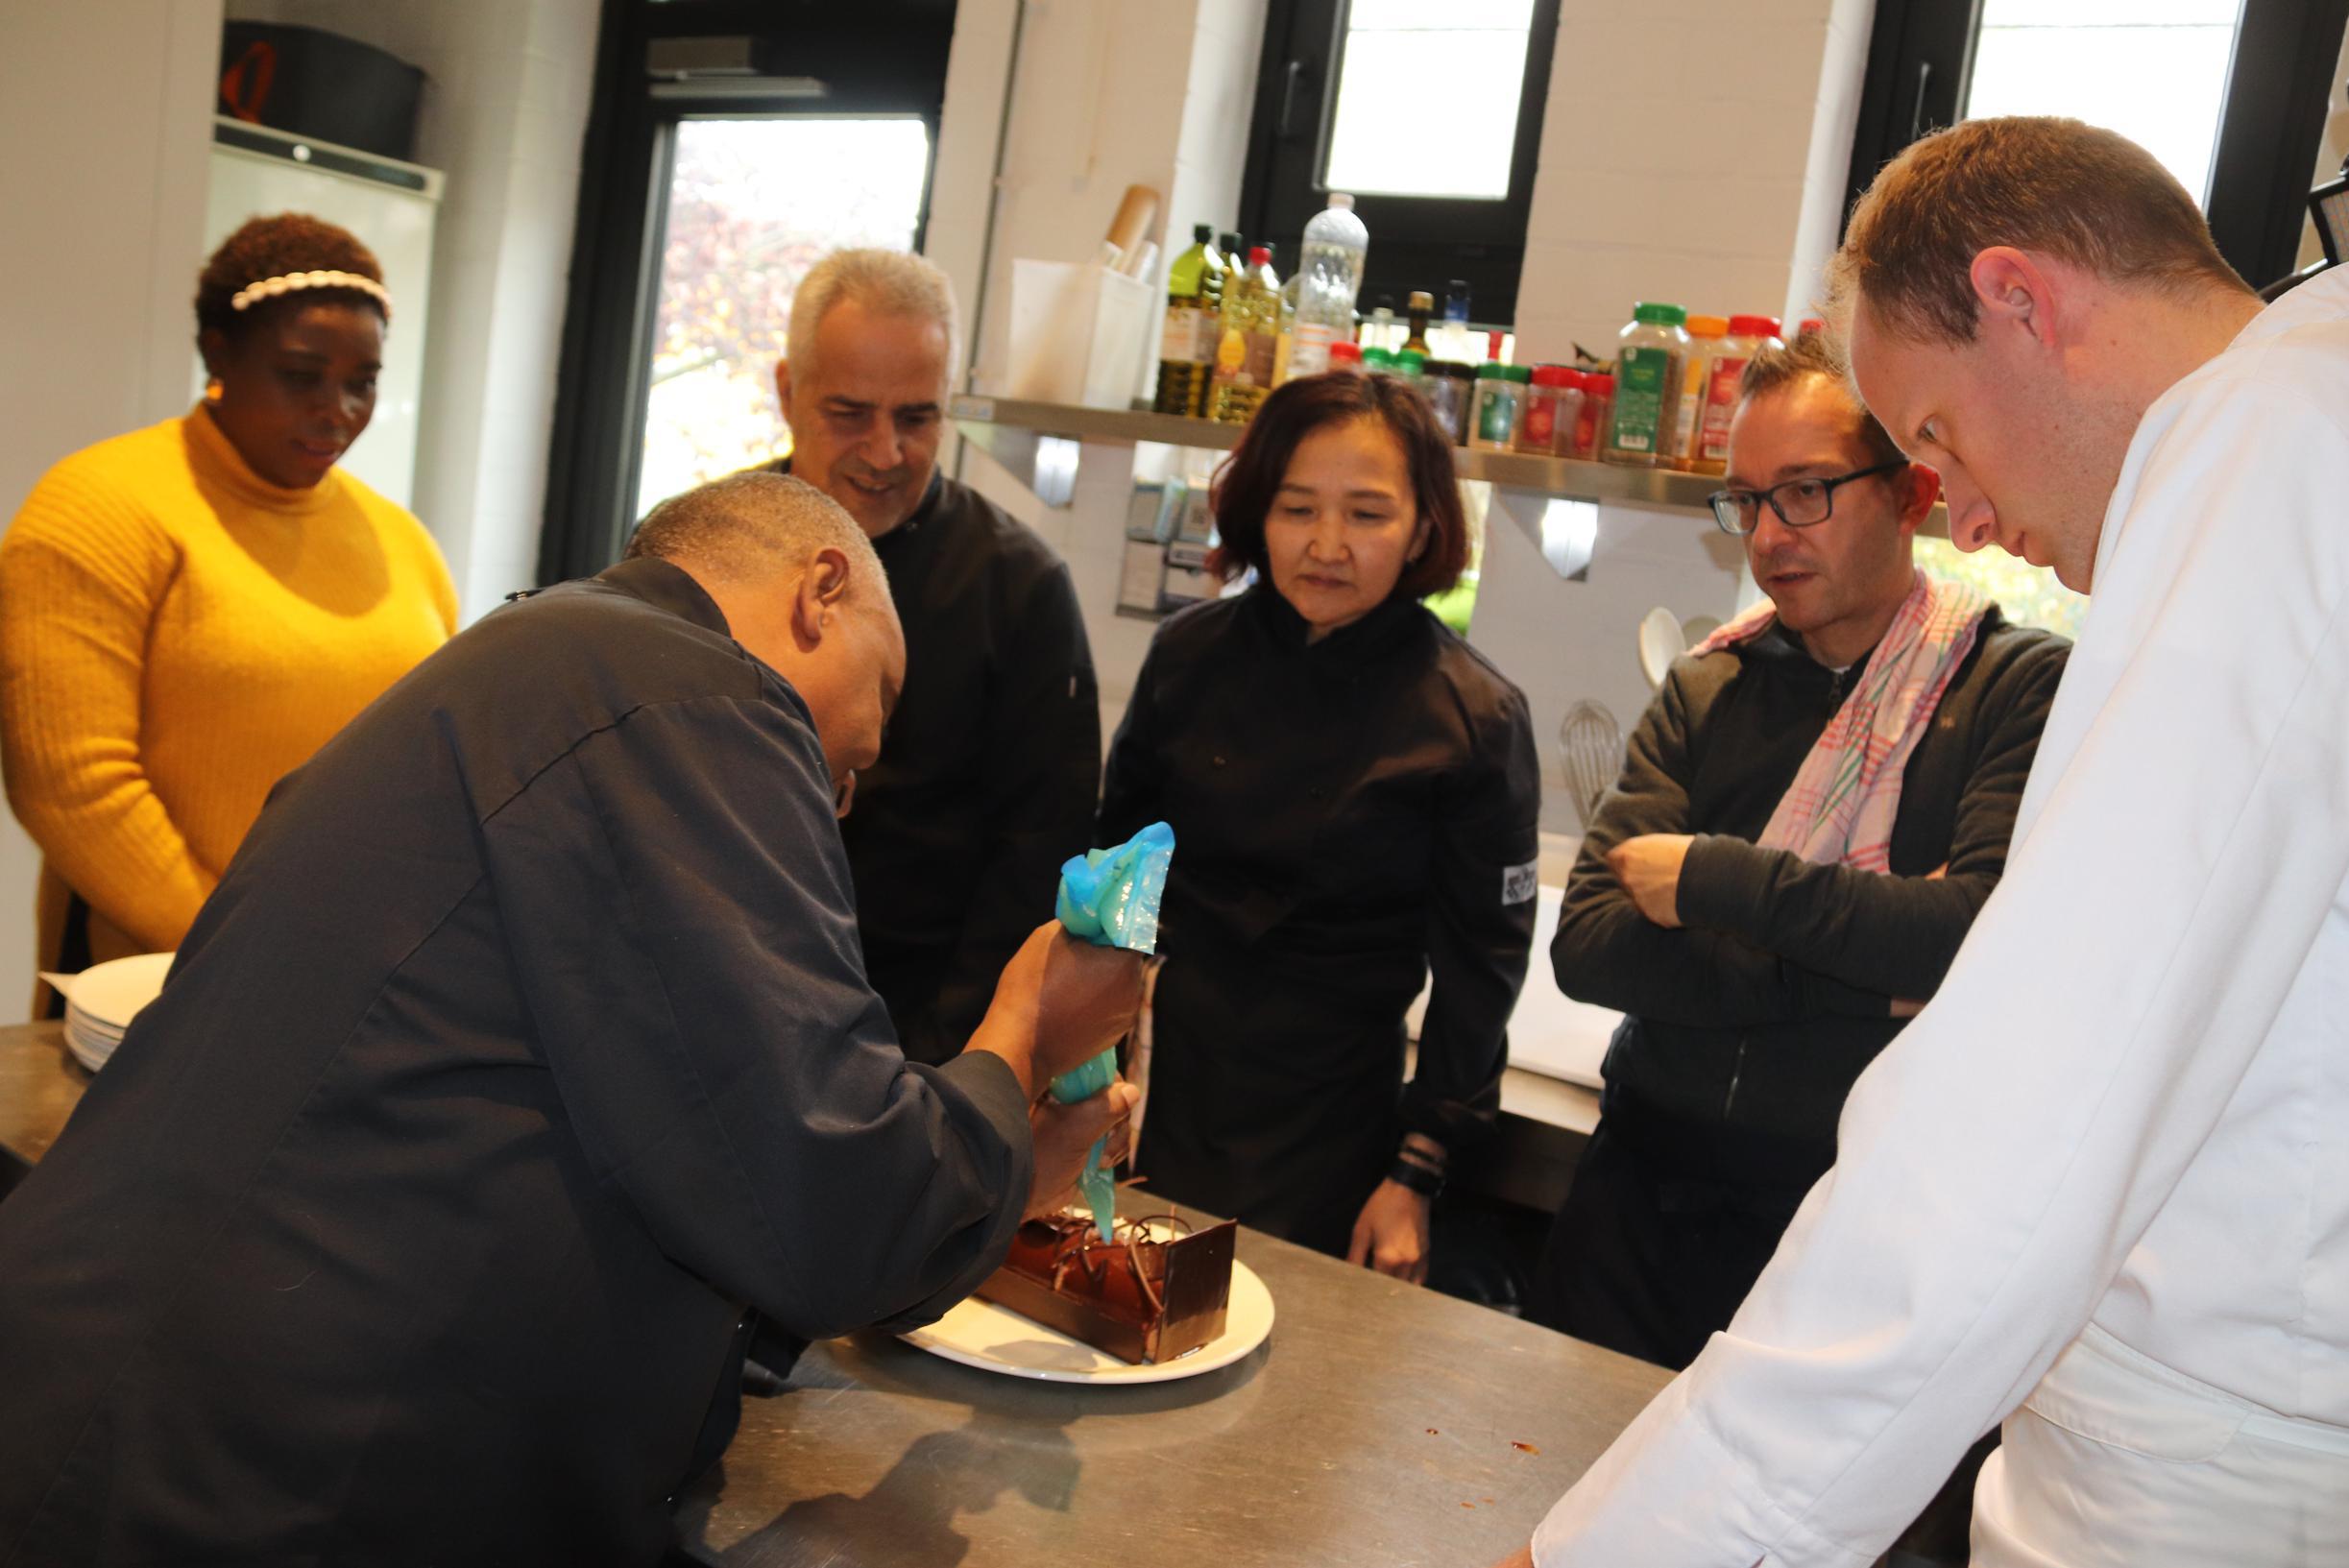 Koks buurtrestaurants gaan in de leer bij sterrenchef voor hun feestmenu: “Velouté van kastanje wordt een uitdaging”